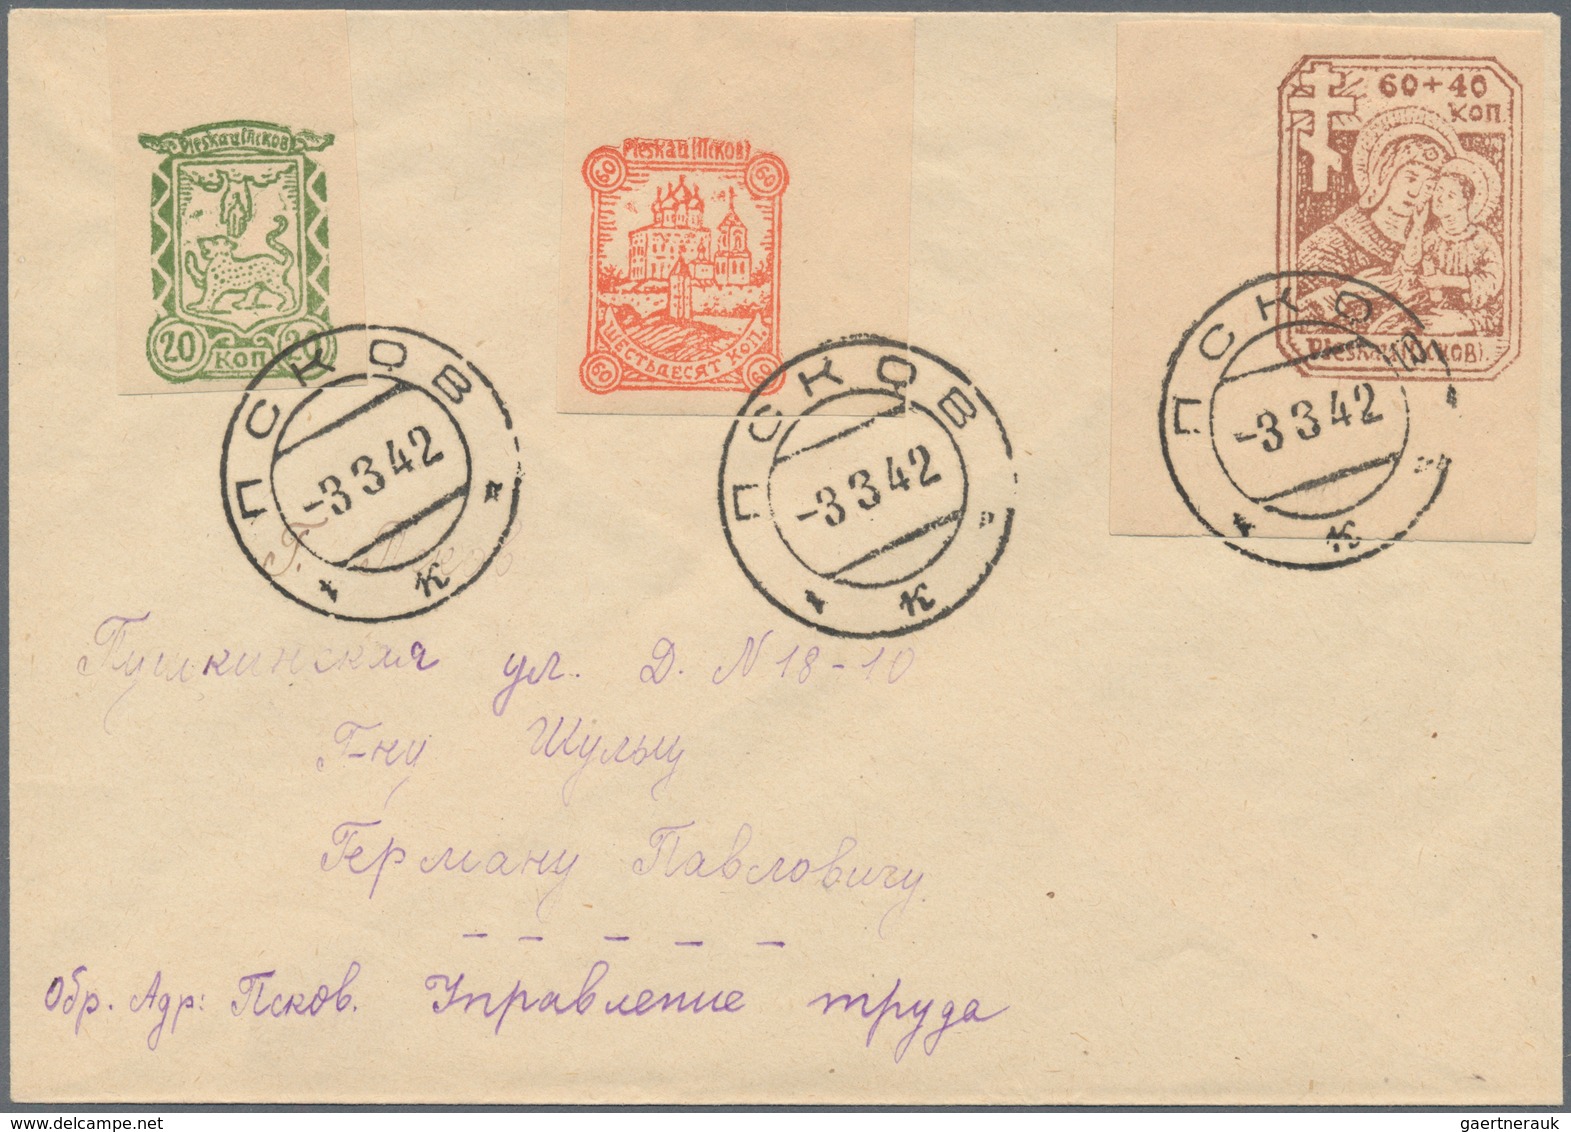 Dt. Besetzung II WK - Russland - Pleskau (Pskow): 1942, Michel Nummern 14-16 B Auf Brief Vom 3.3.42. - Bezetting 1938-45